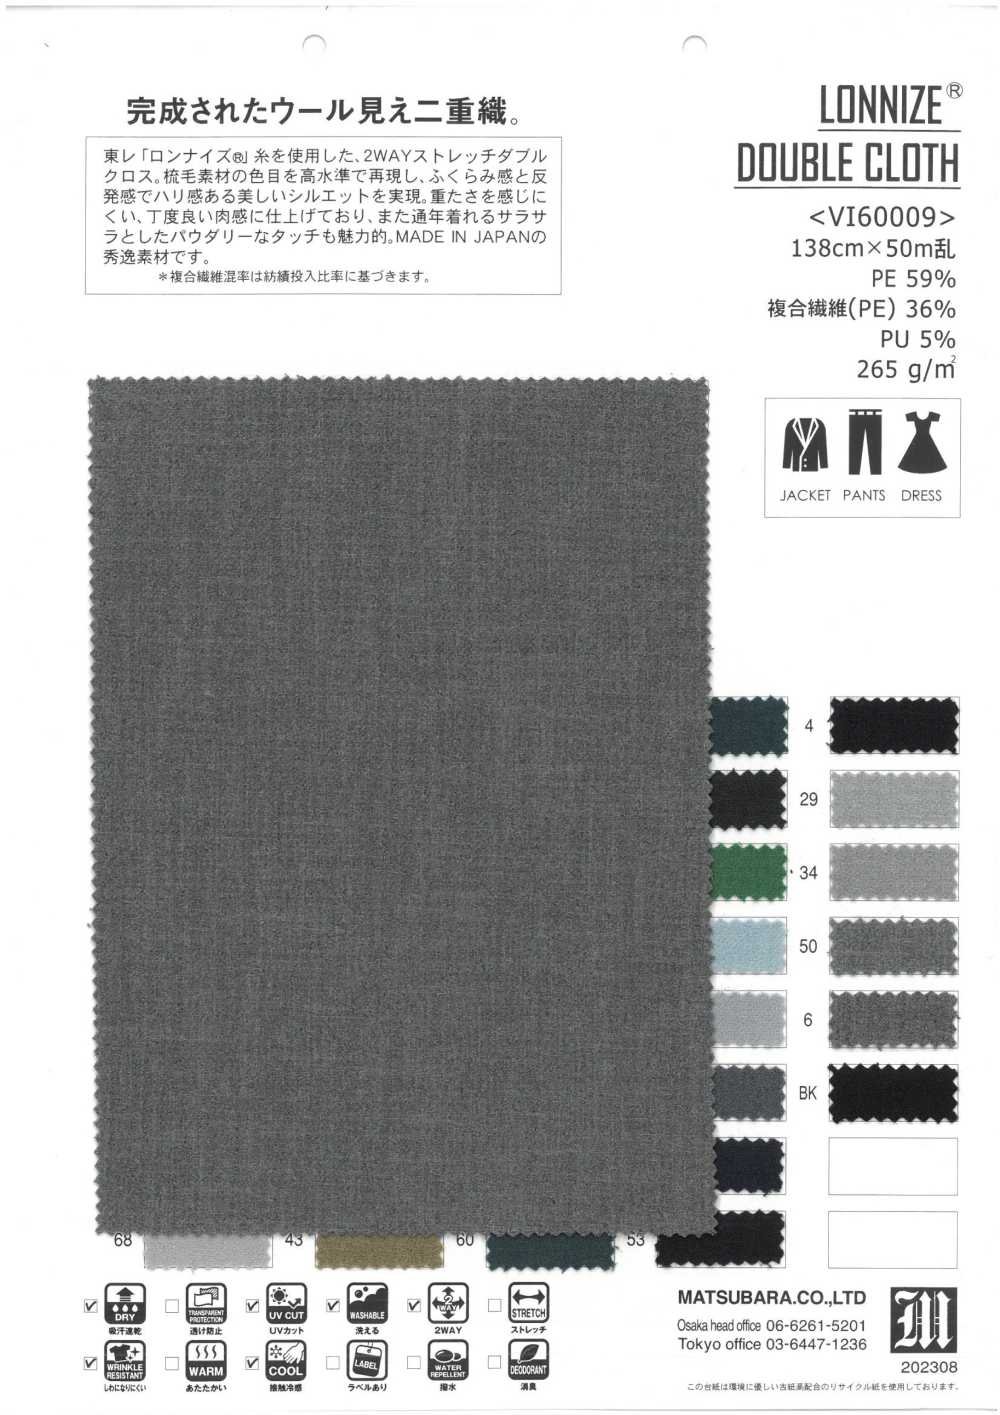 VI60009 LONNIZE® DOUBLE CLOTH[Textile / Fabric] Matsubara